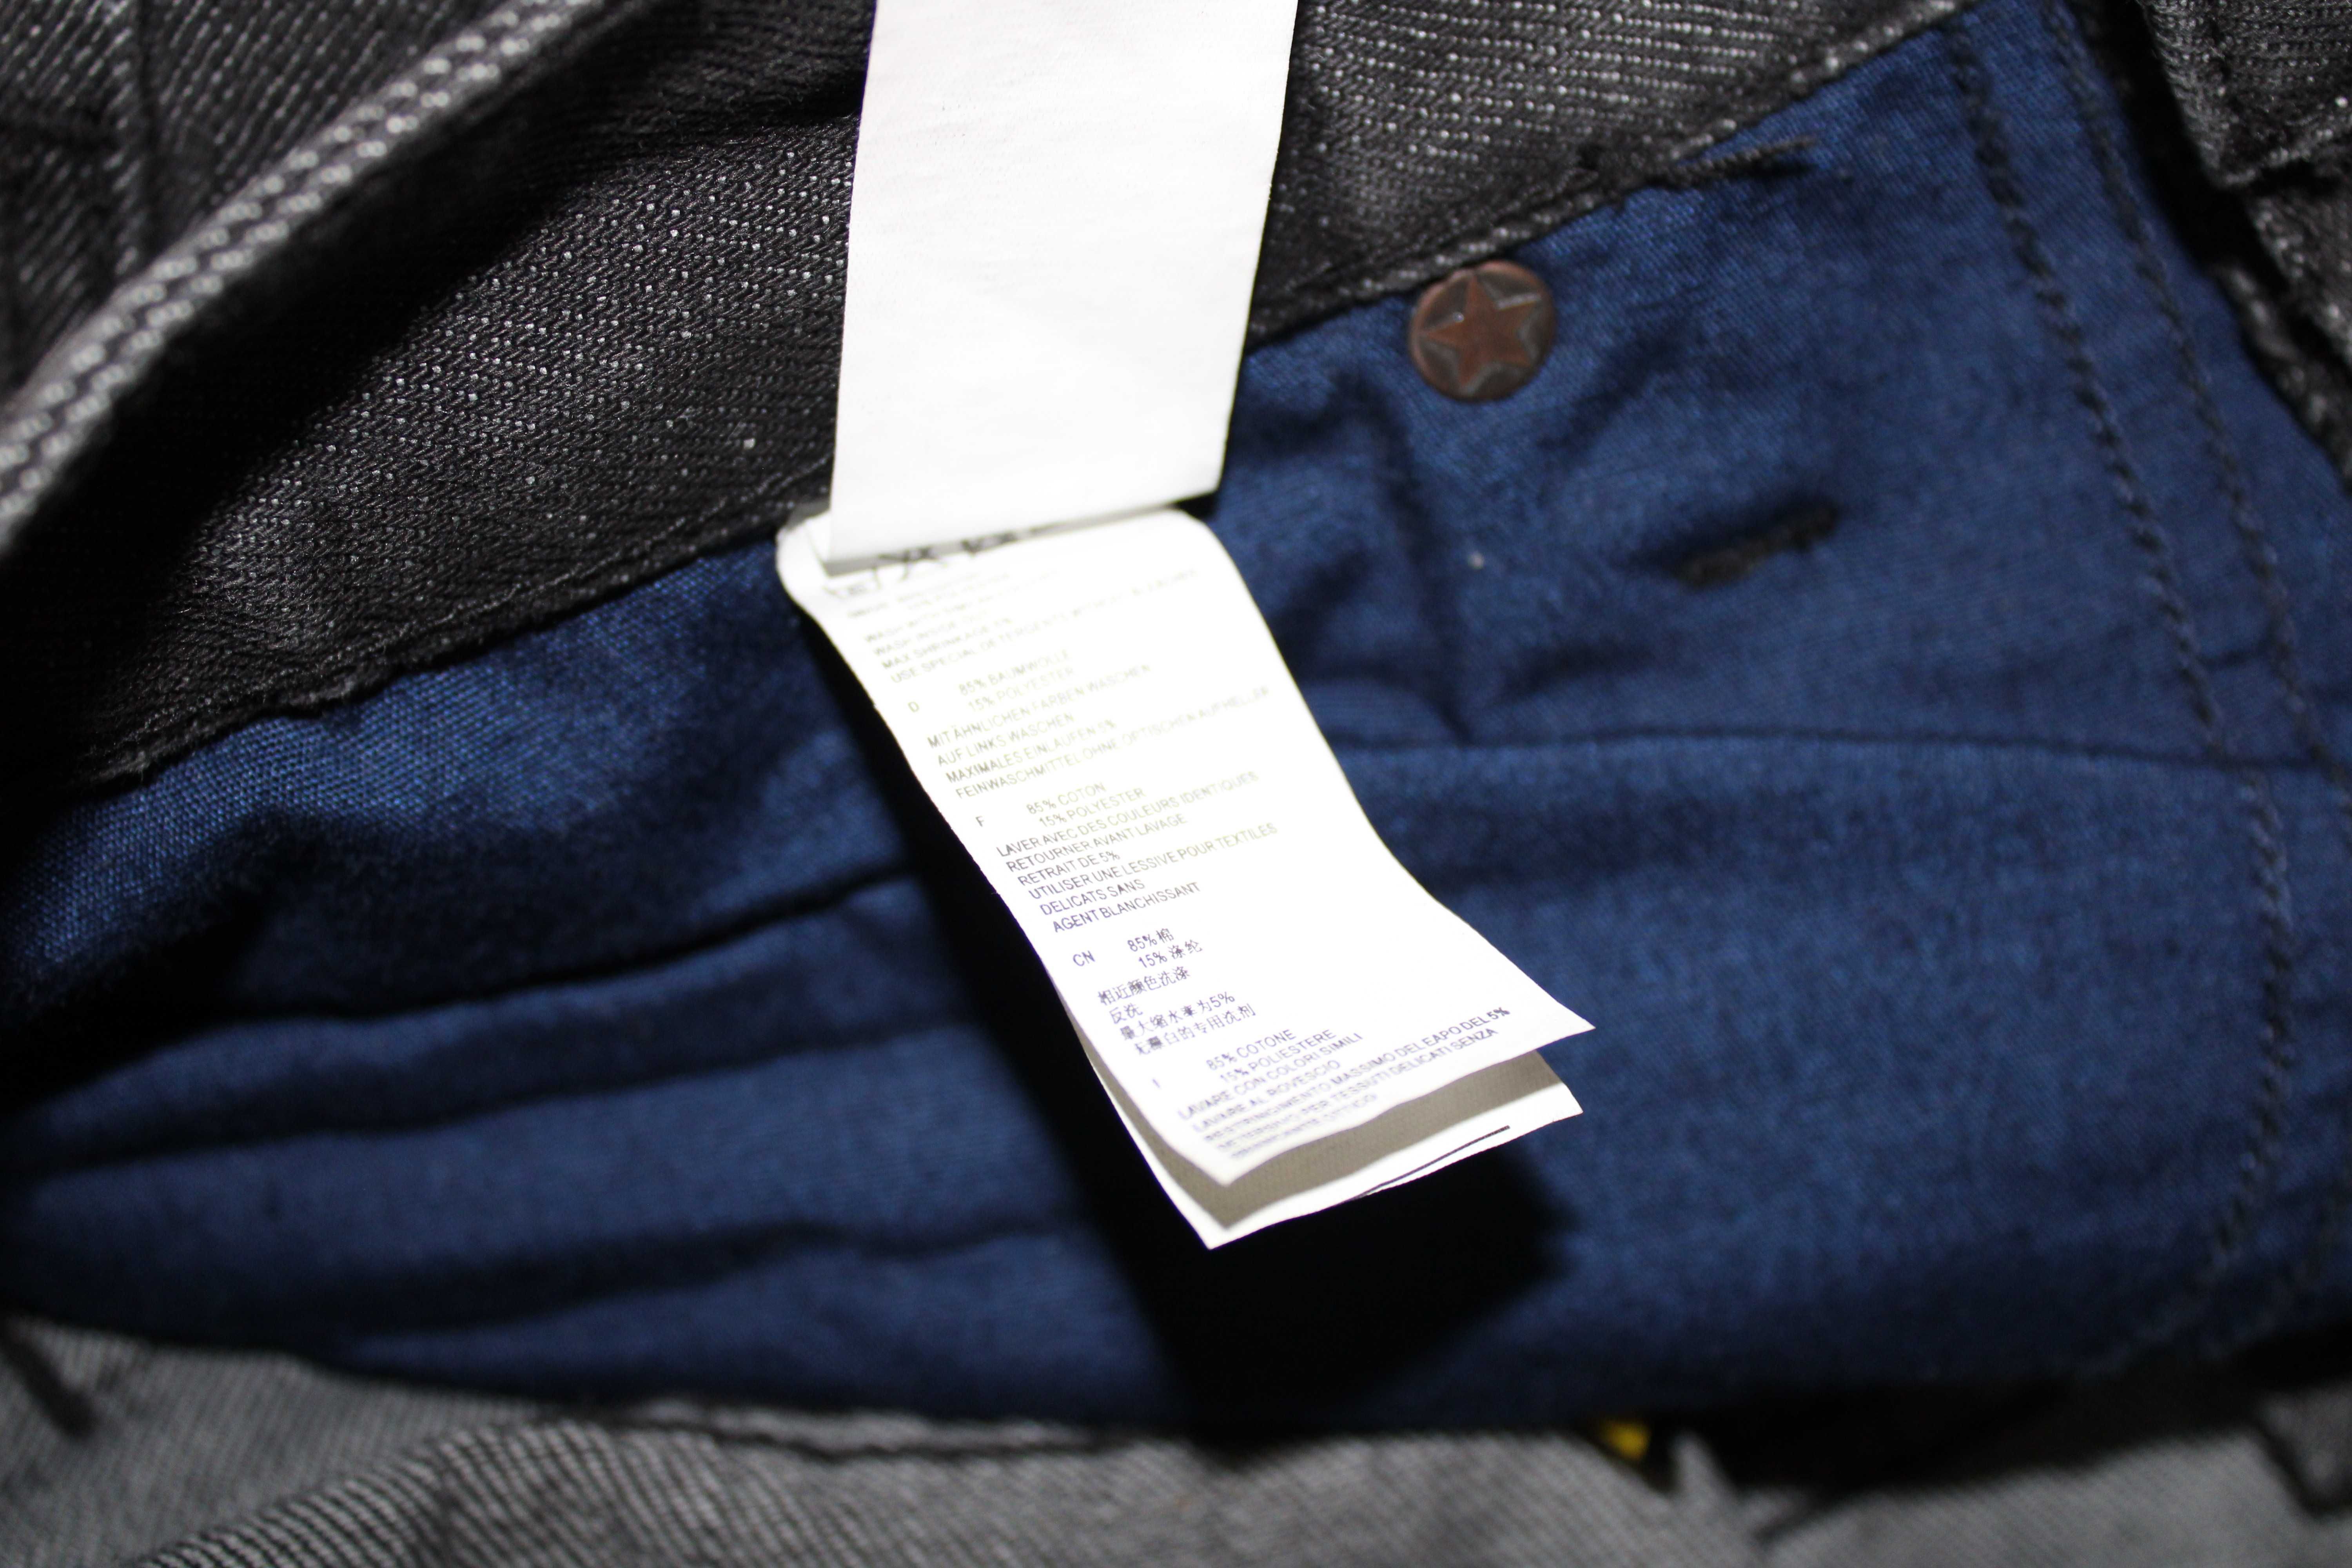 Чисто нови с етикет мъжки дънки / Denim Shine Original denim jeans